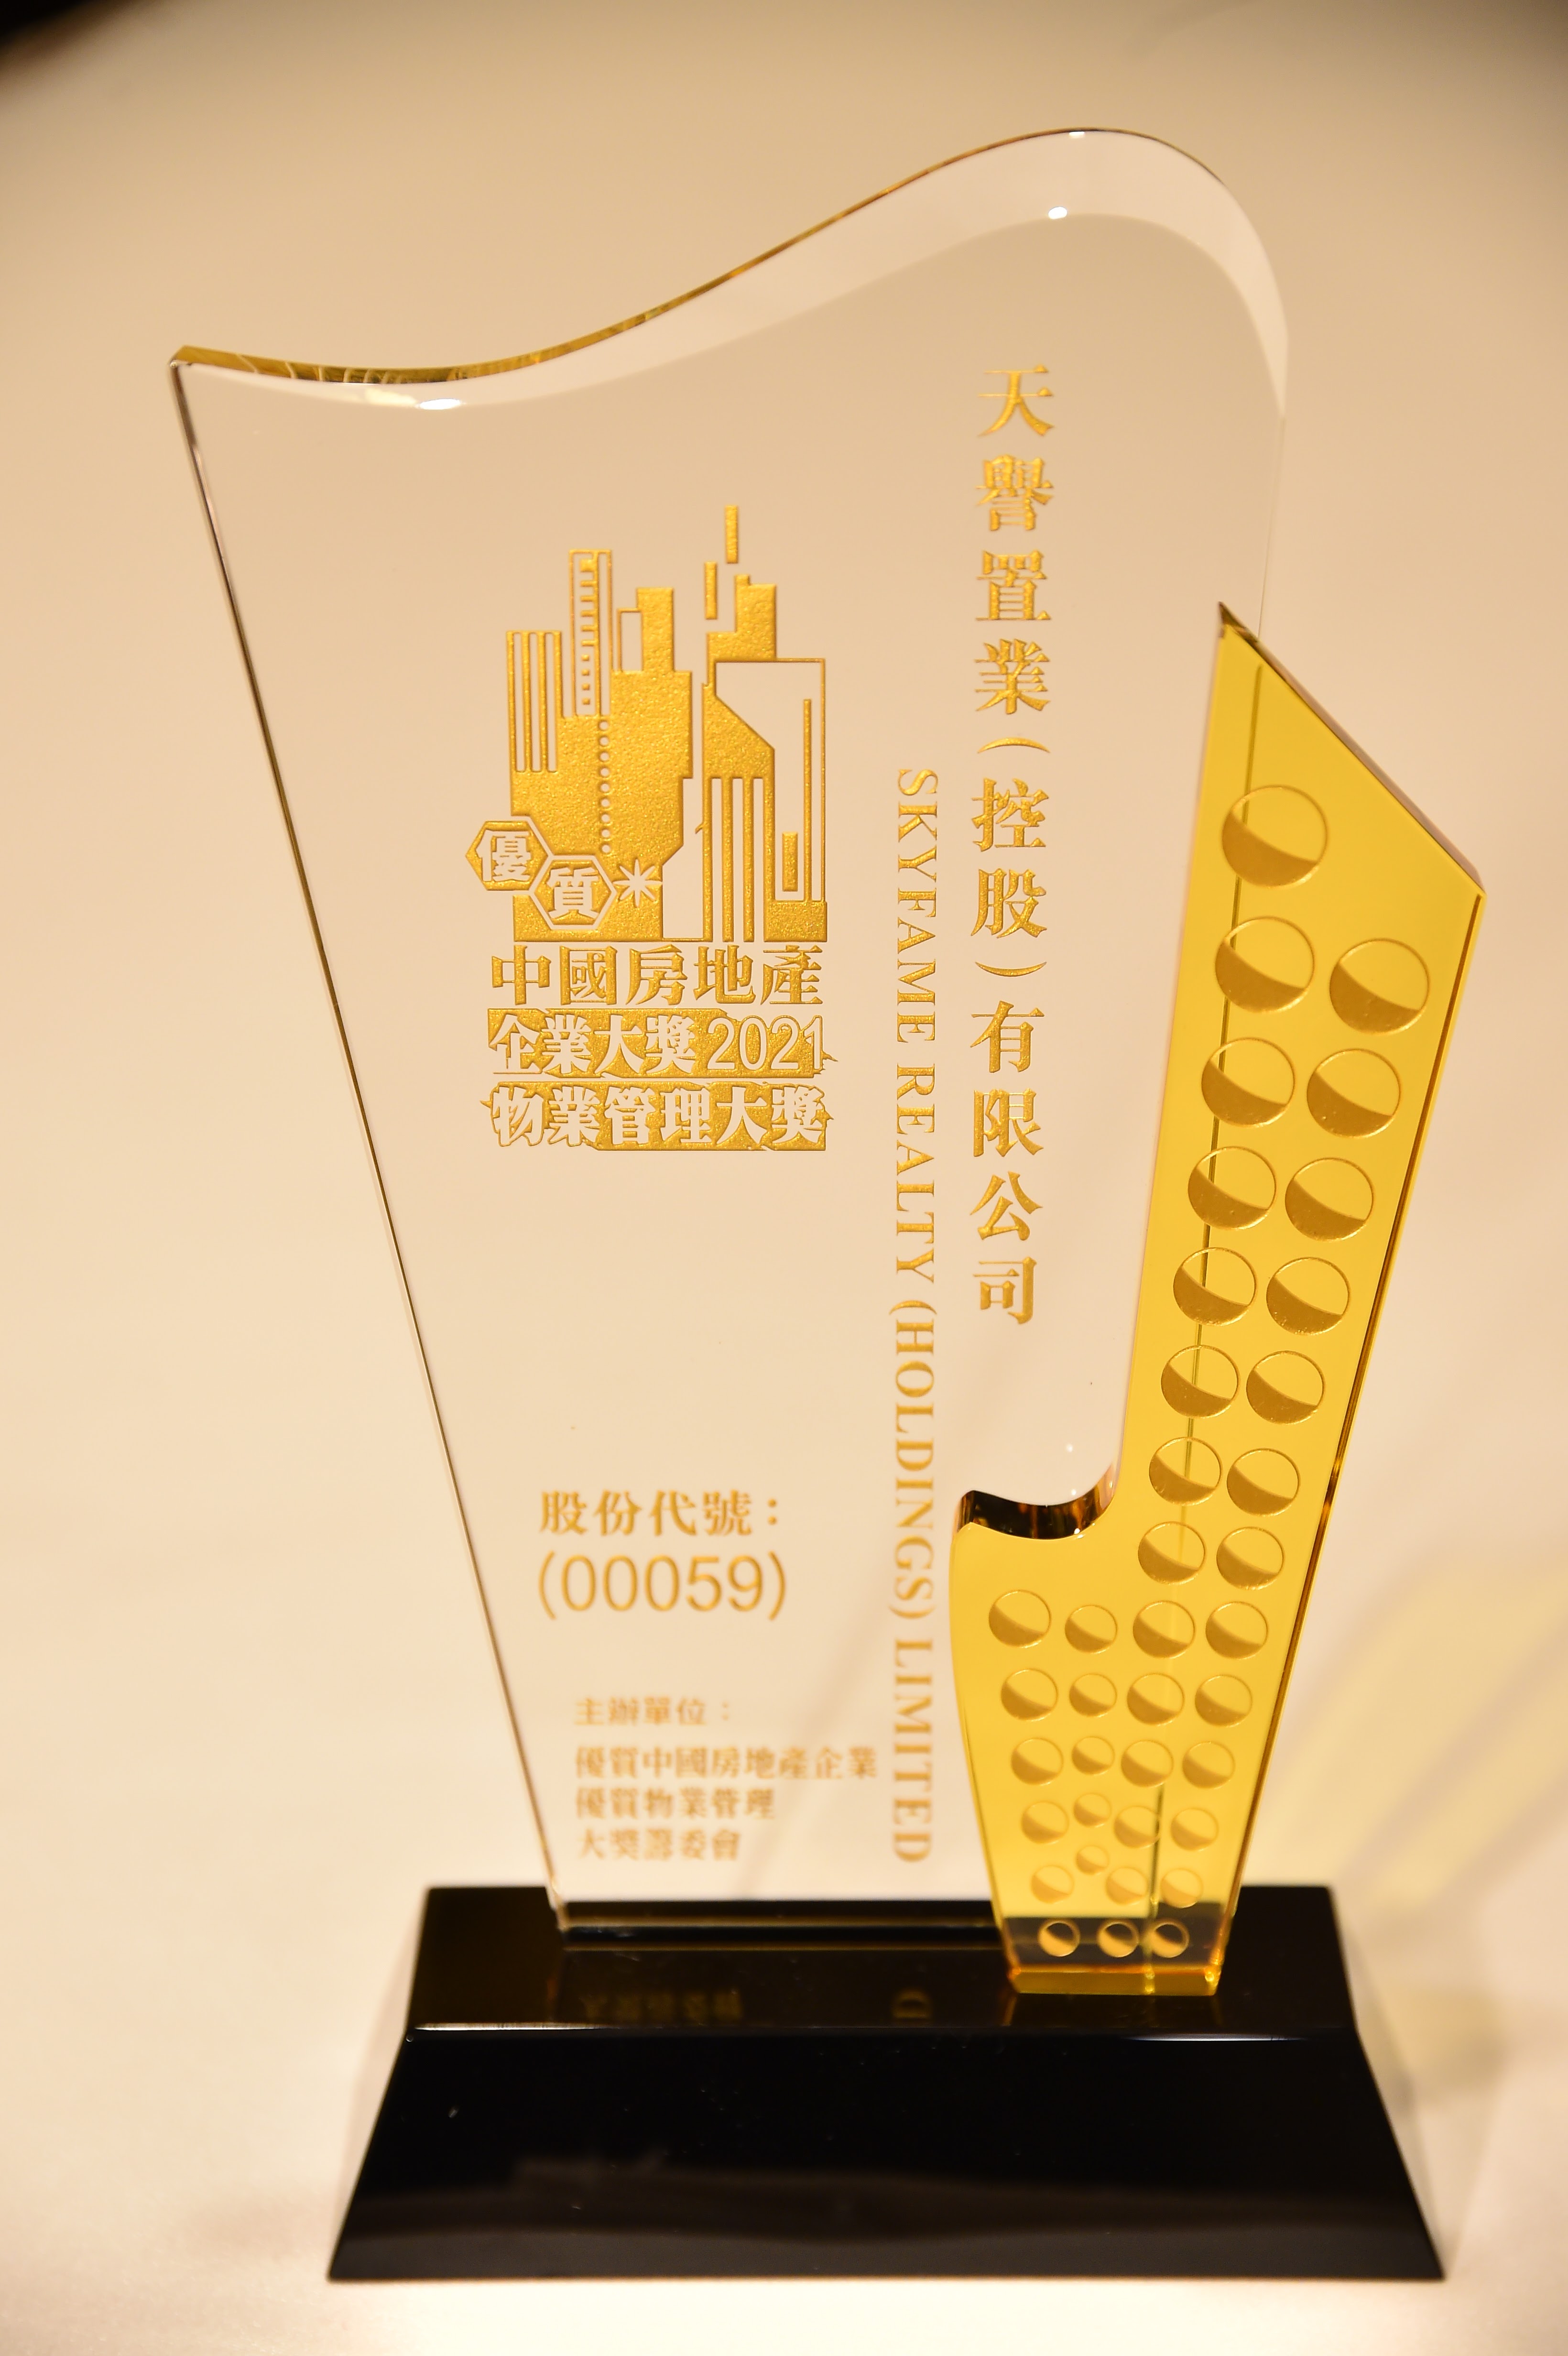 荣获2021年度优质中国房地产企业大奖殊荣